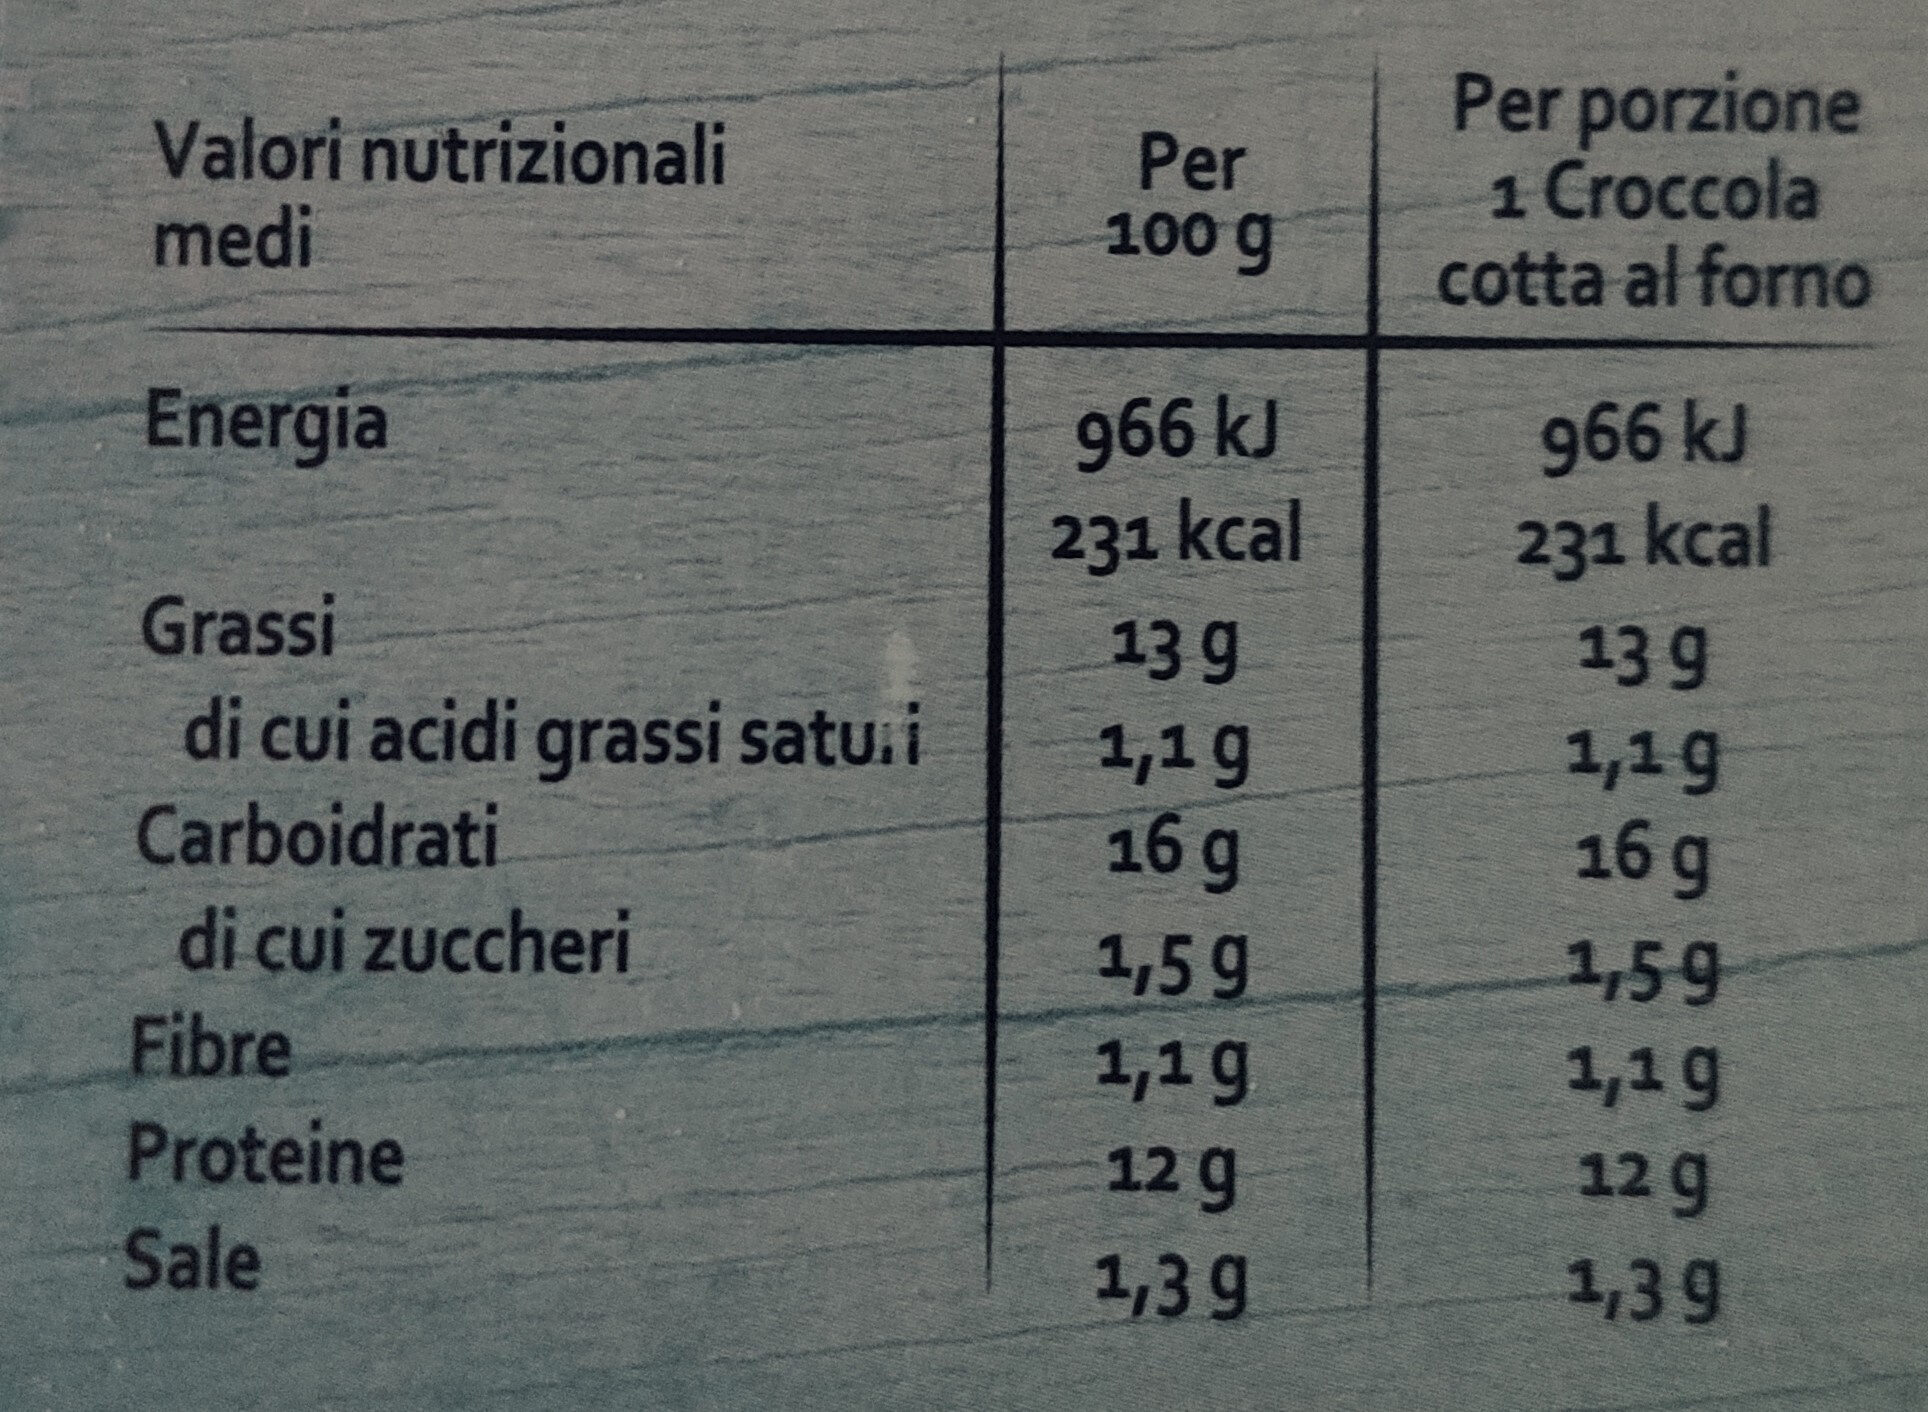 3 croccole agli spinaci - Nutrition facts - it